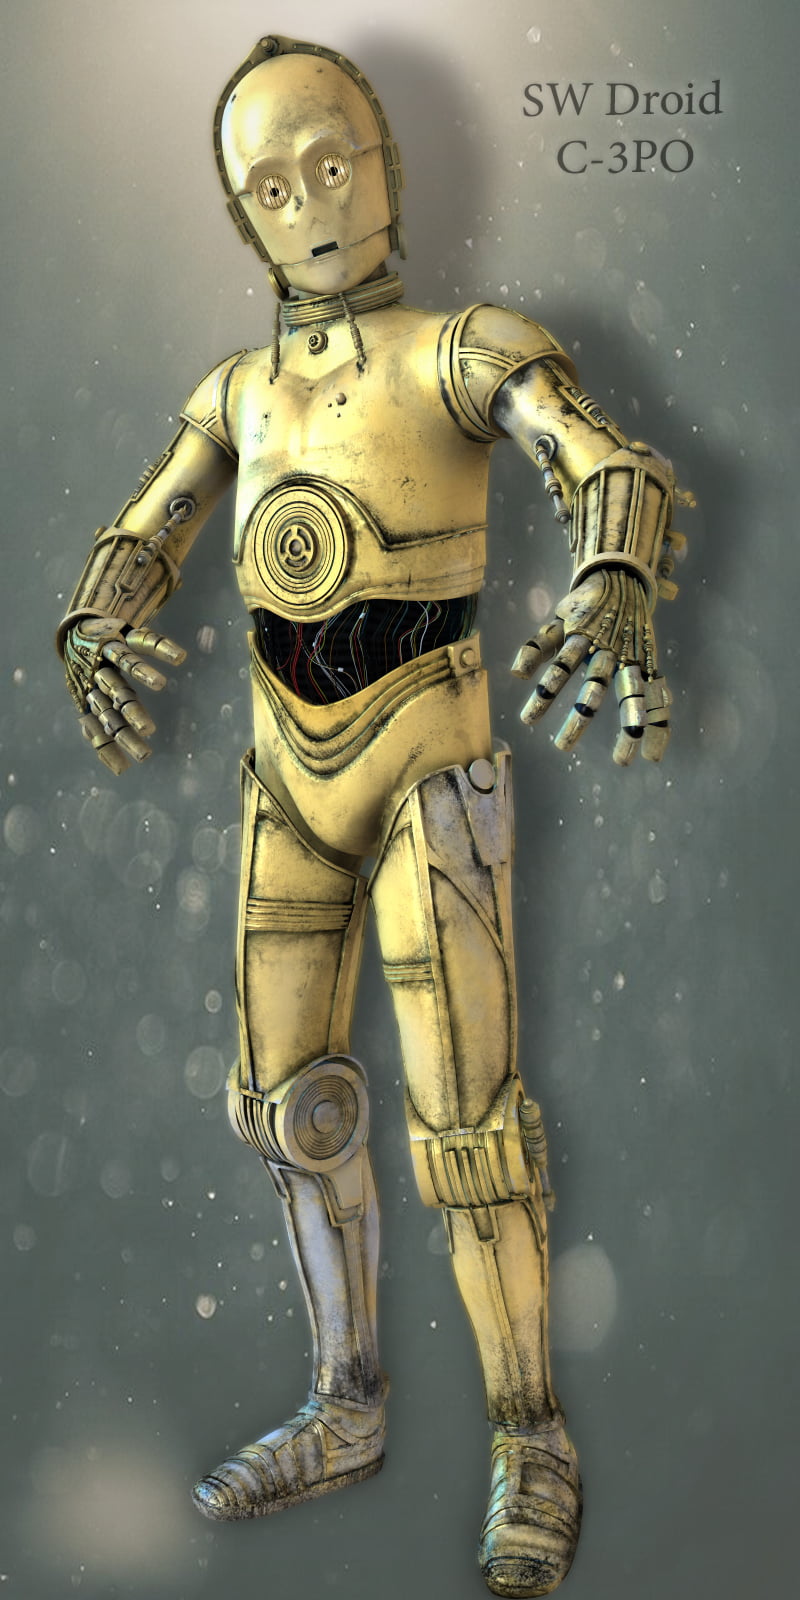 SW Droid C-3PO